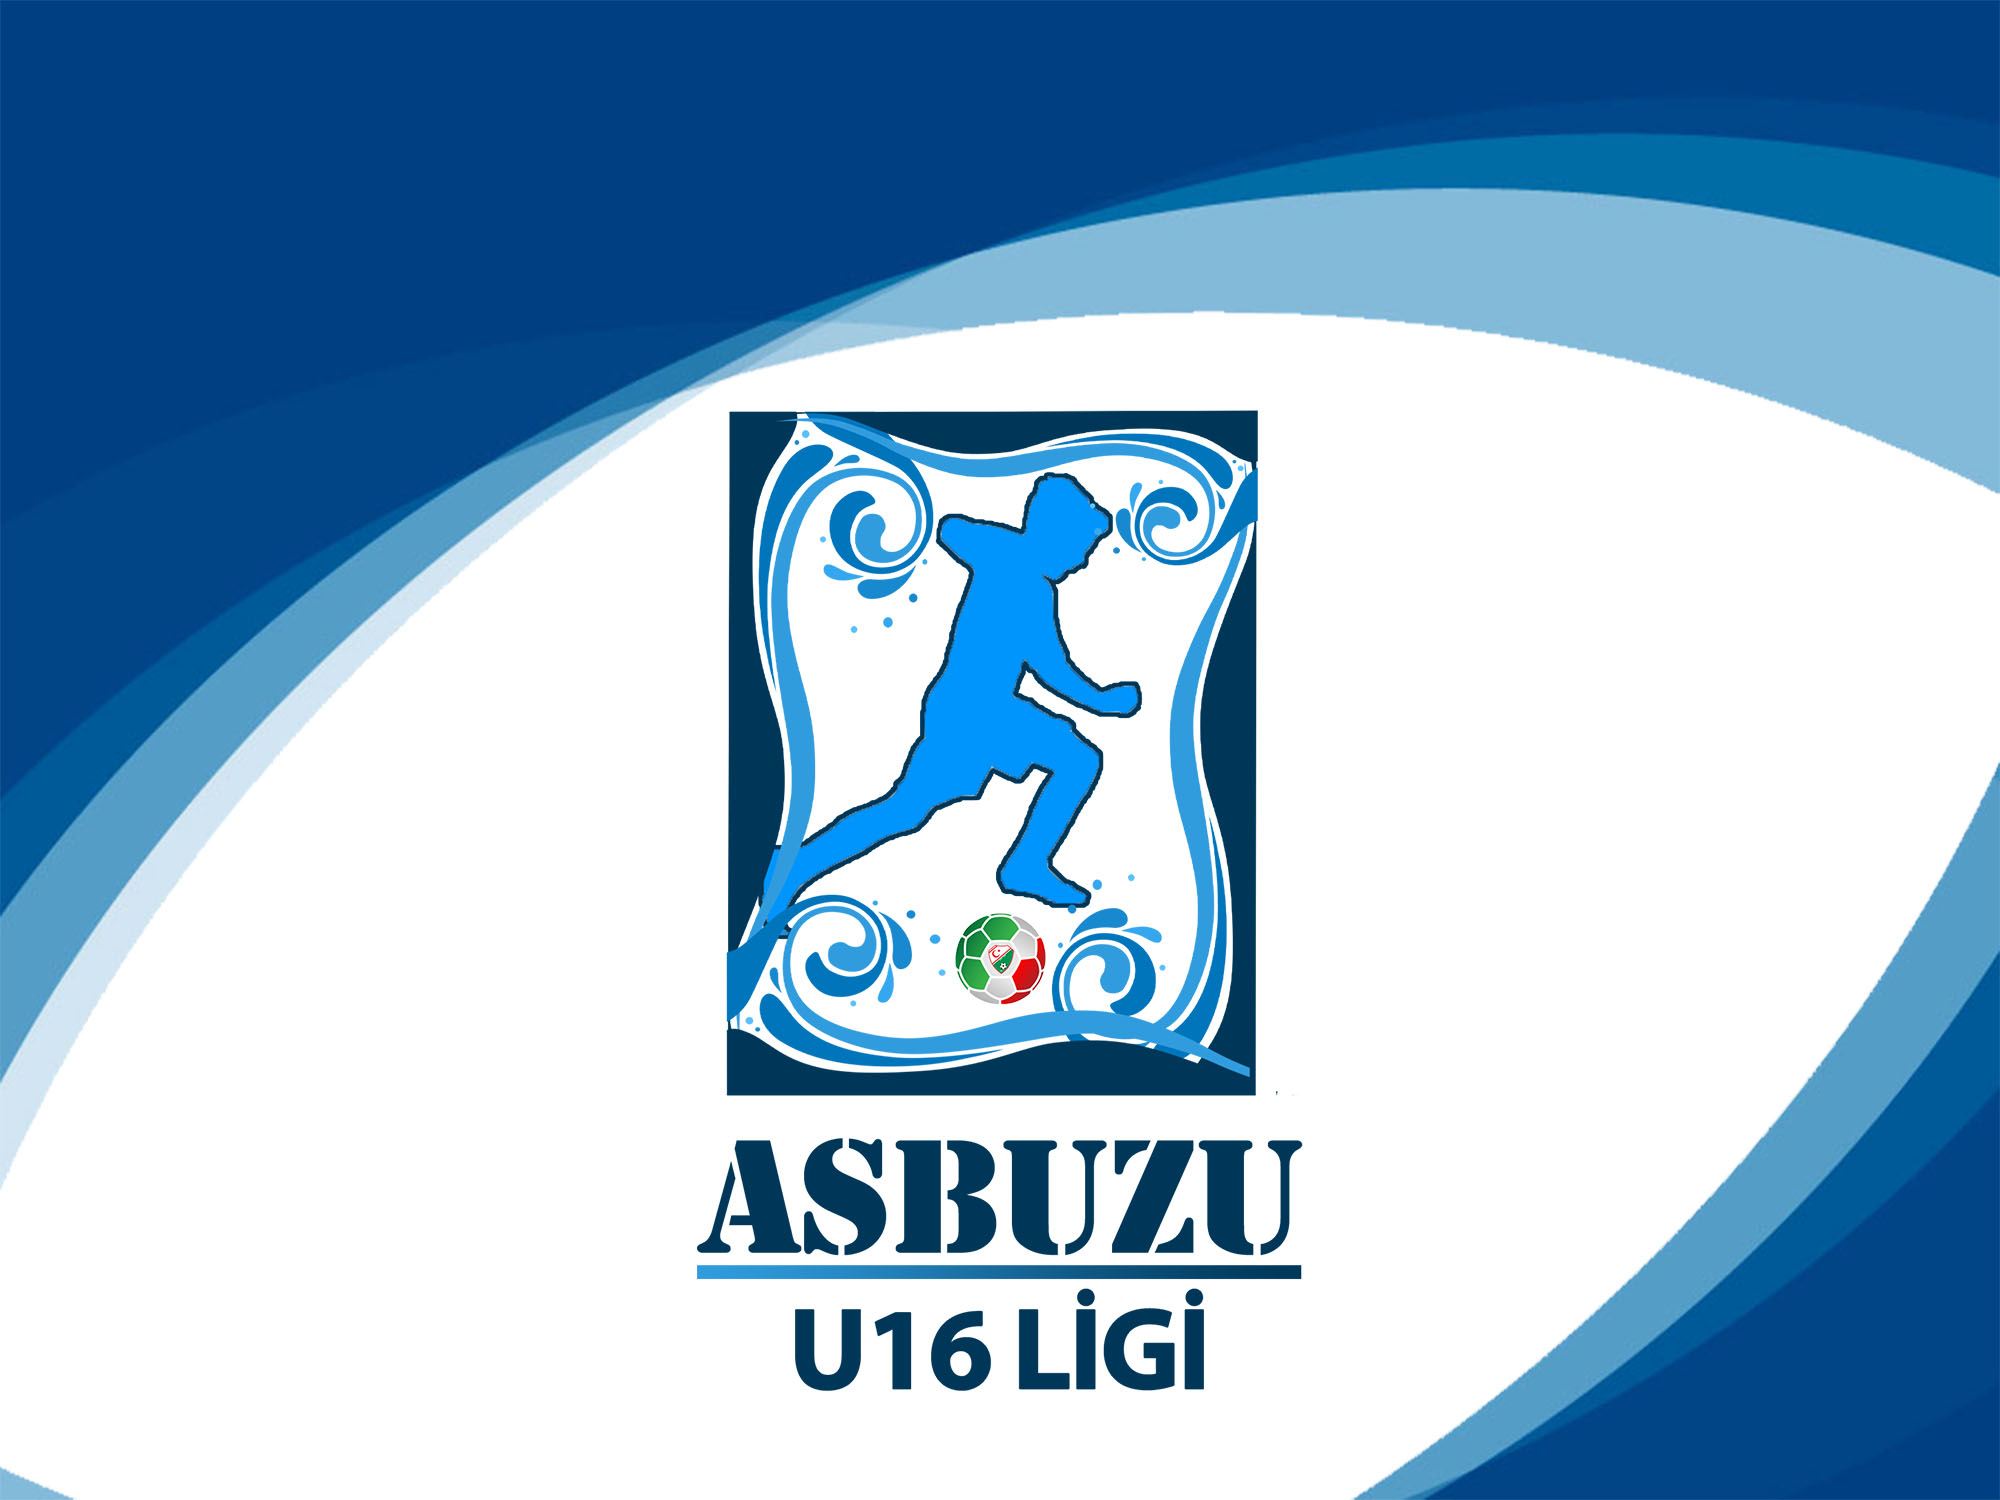 Asbuzu U16 Ligi'ne başvurular devam ediyor